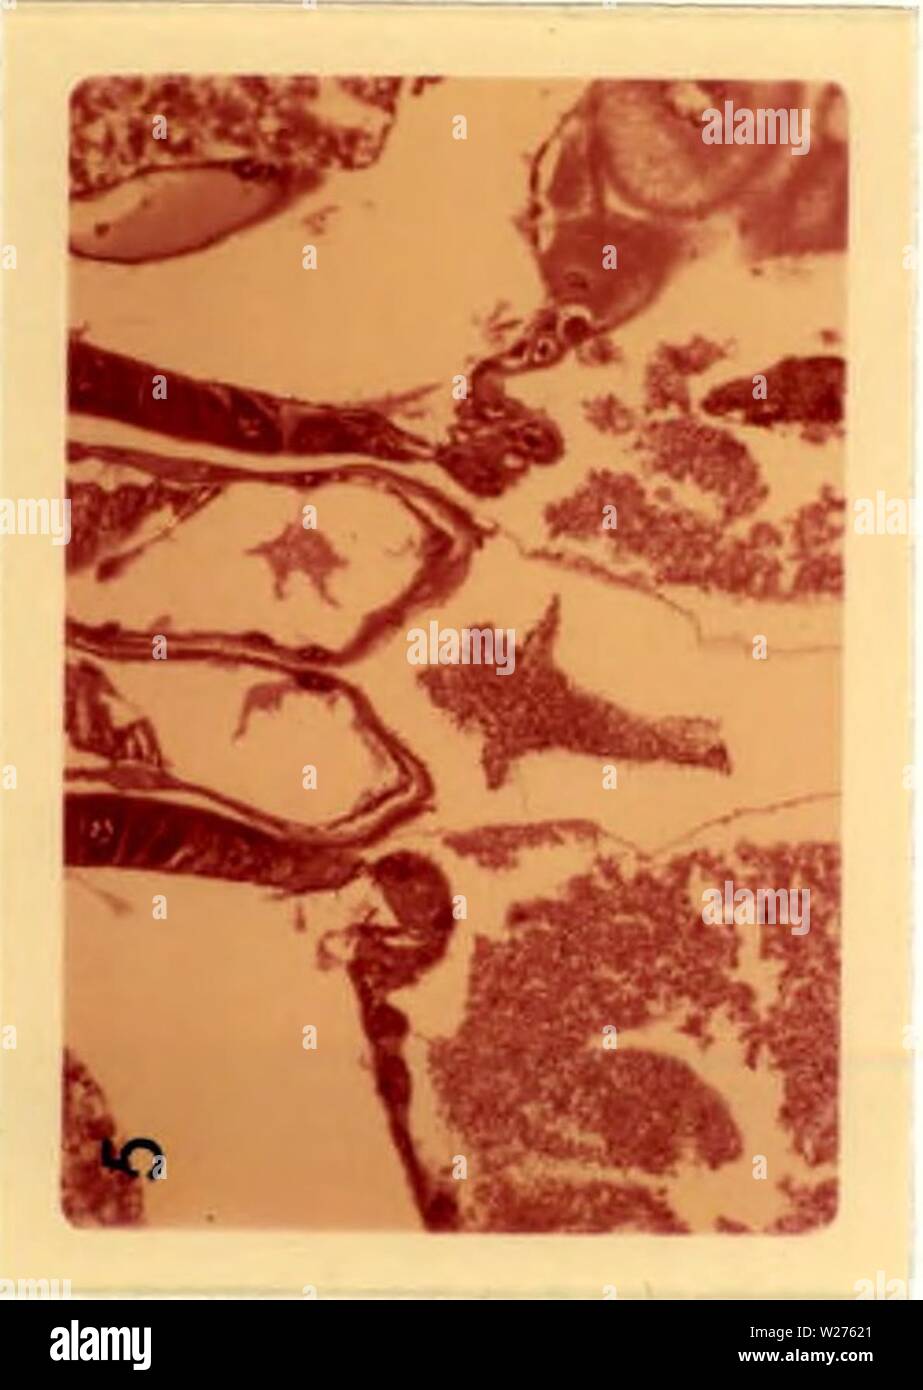 Immagine di archivio da pagina 42 di citopatologia di poliedrosi nucleare. Citopatologia di nuclear polyhedrosis virus in Aedes triseriatus (diciamo) cytopathologyofn00federich Anno: 1970 Foto Stock